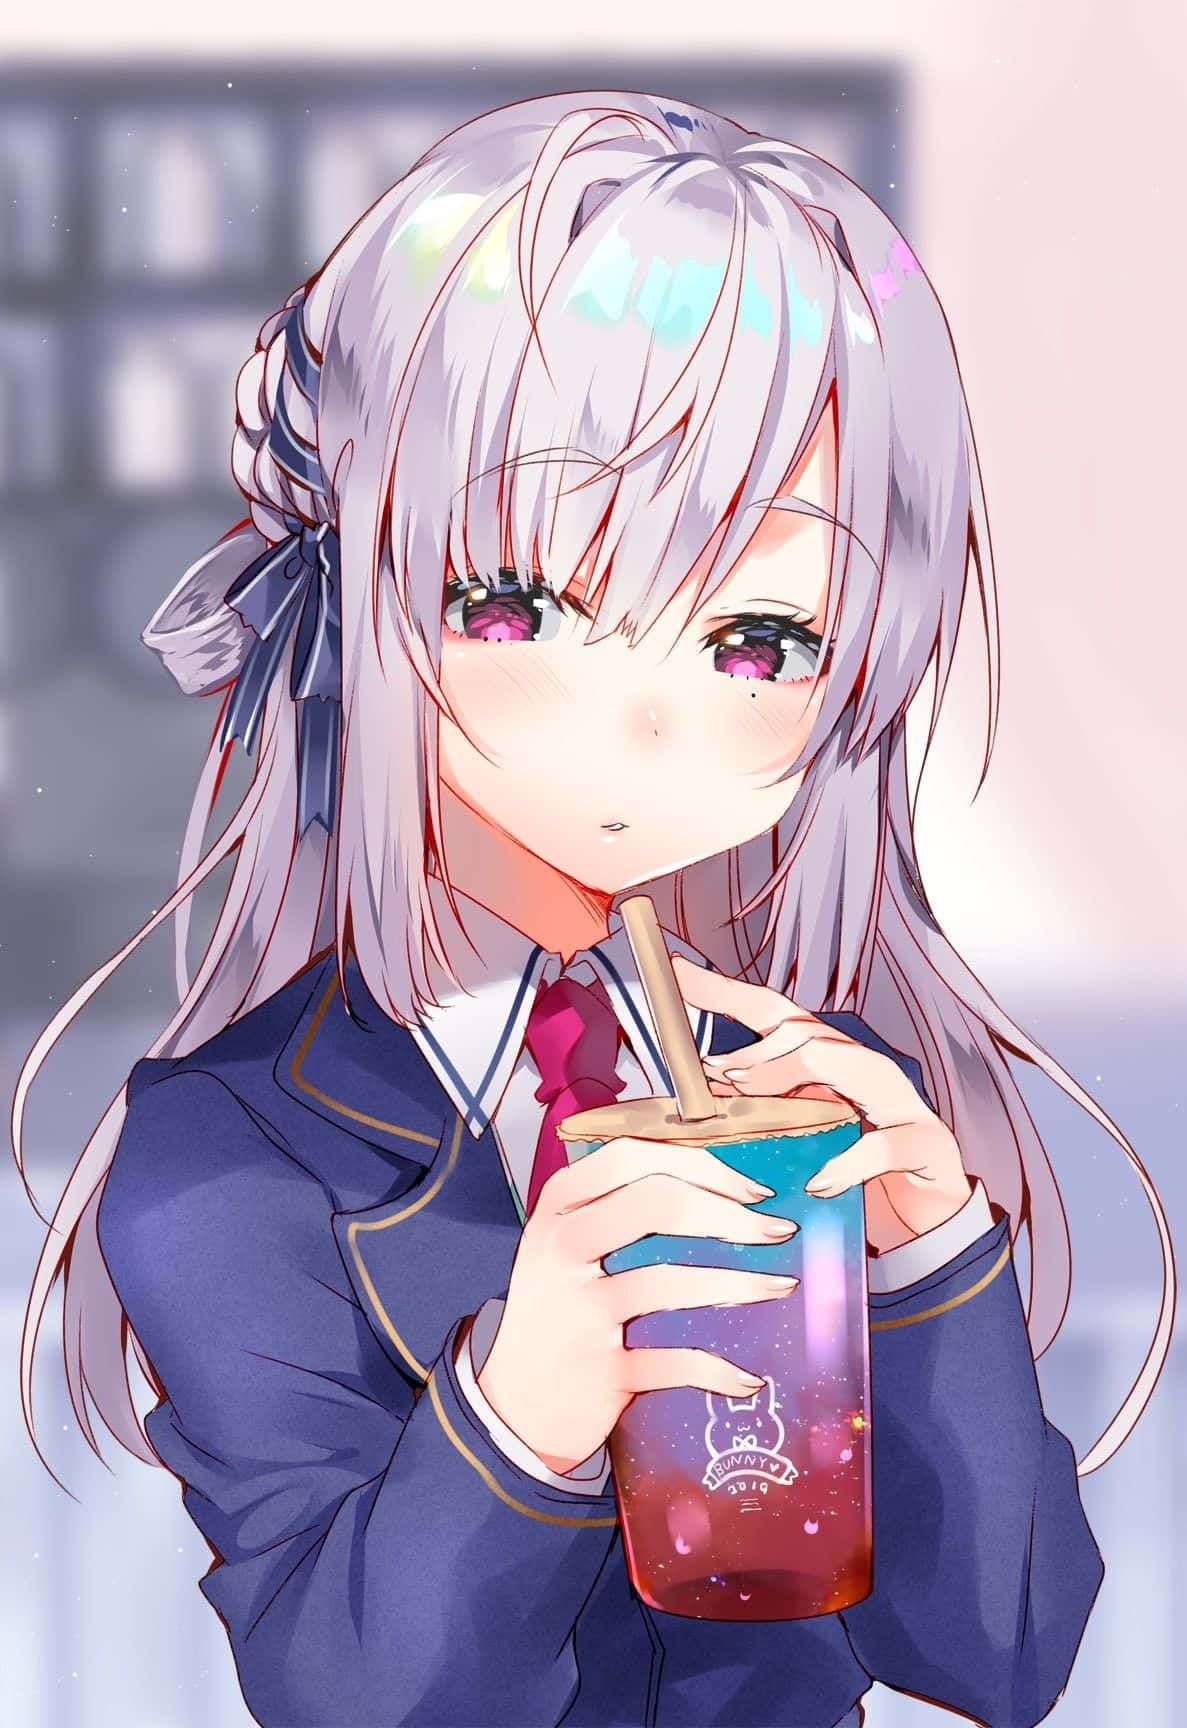 Với hình ảnh anime uống trà sữa đầy sáng tạo và ấn tượng, bạn sẽ cảm thấy rất thích thú và không muốn bỏ lỡ bất kỳ bức ảnh nào về trà sữa xinh đẹp.